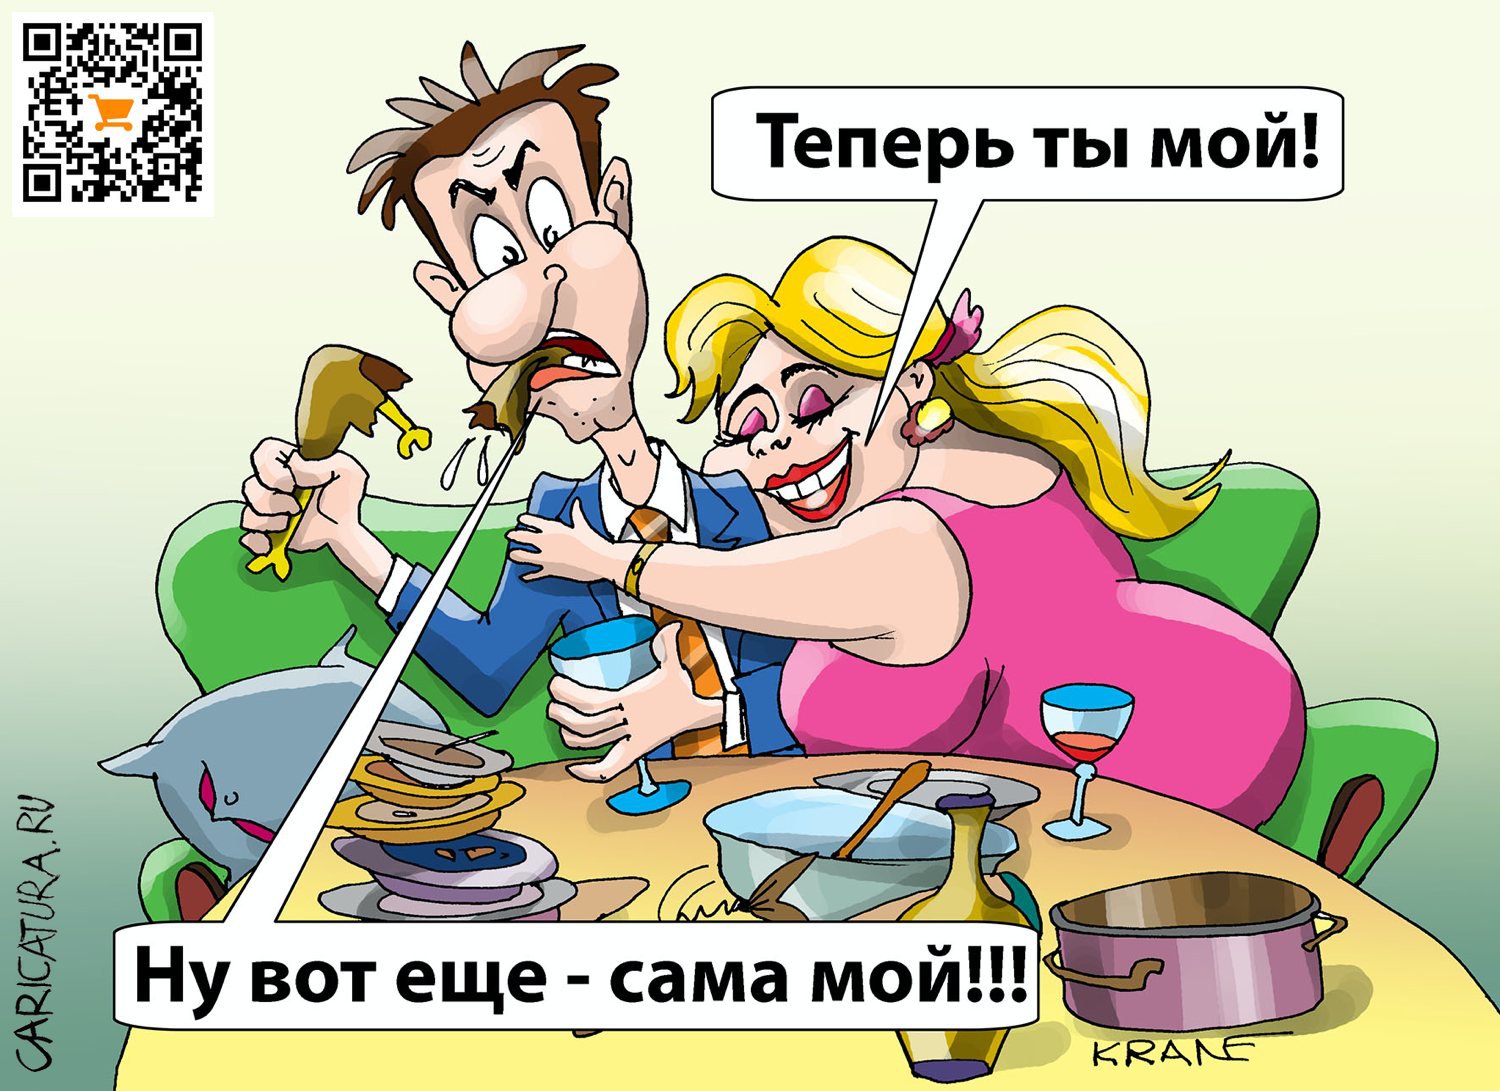 Карикатура "Теперь ты мой!", Евгений Кран